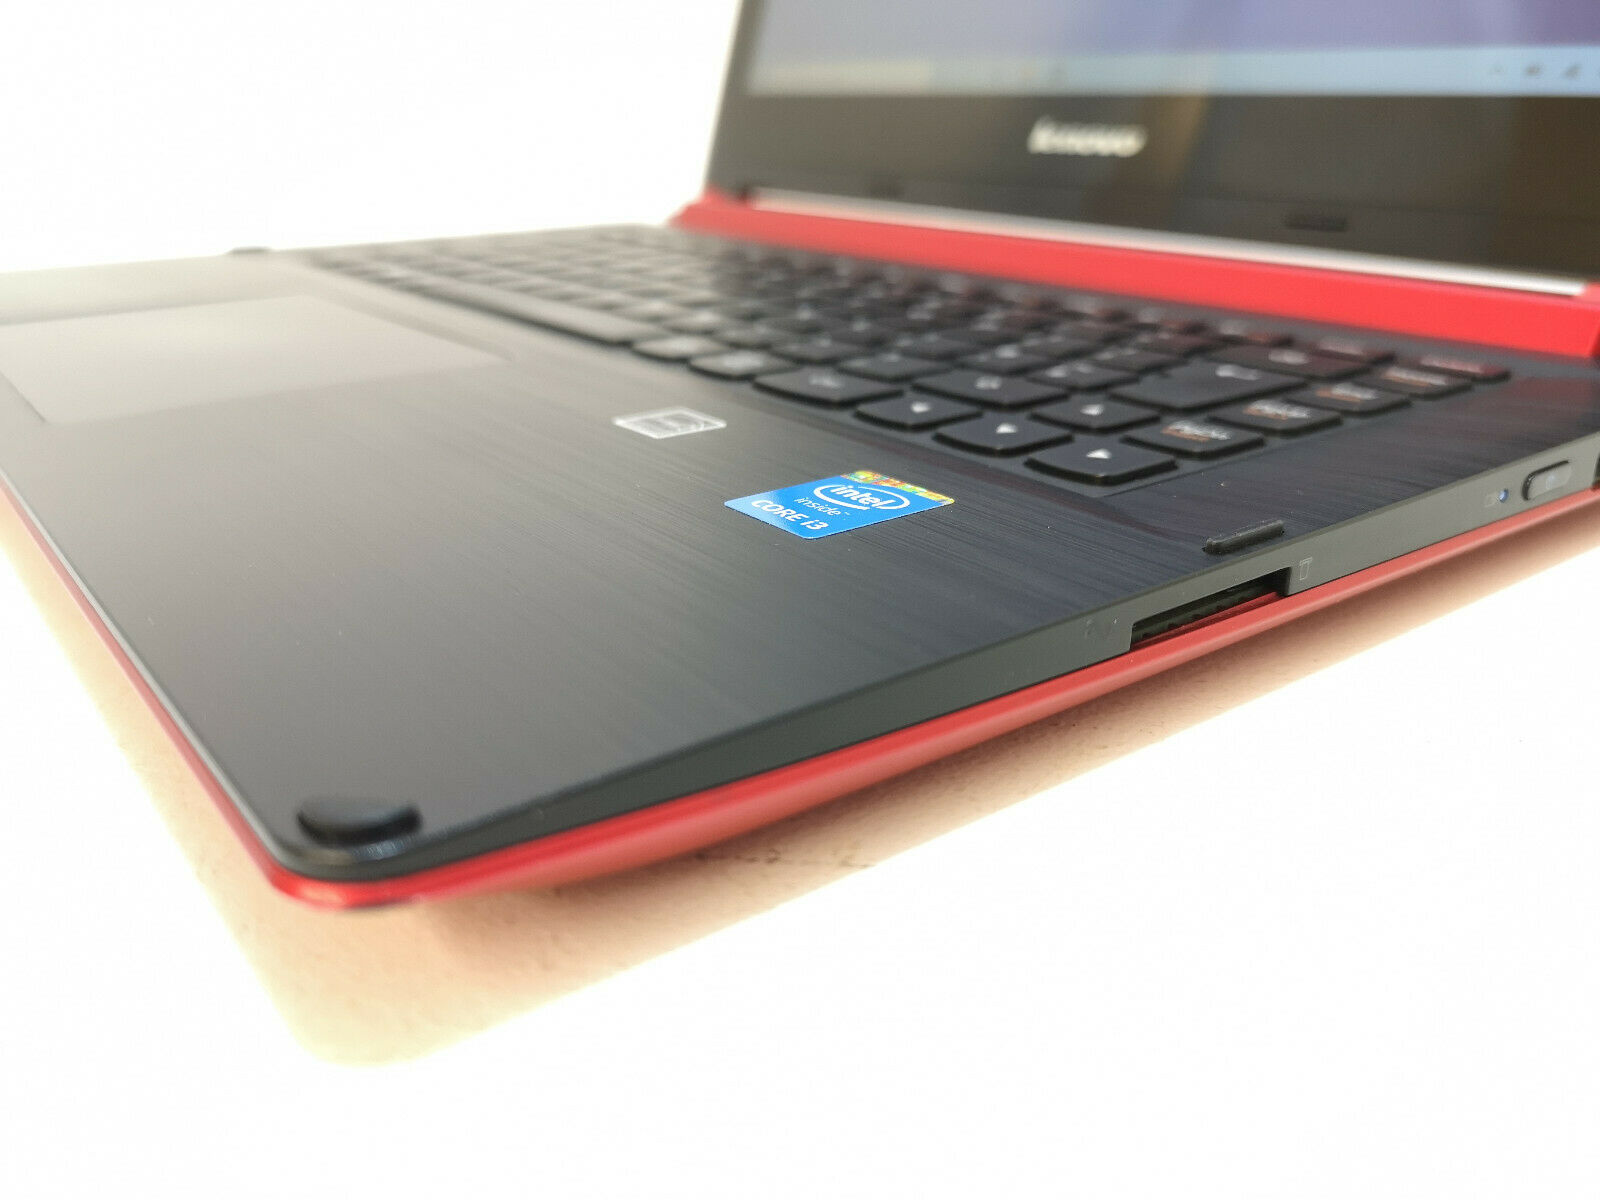 Refurbished Lenovo 20404 Red Laptop PC